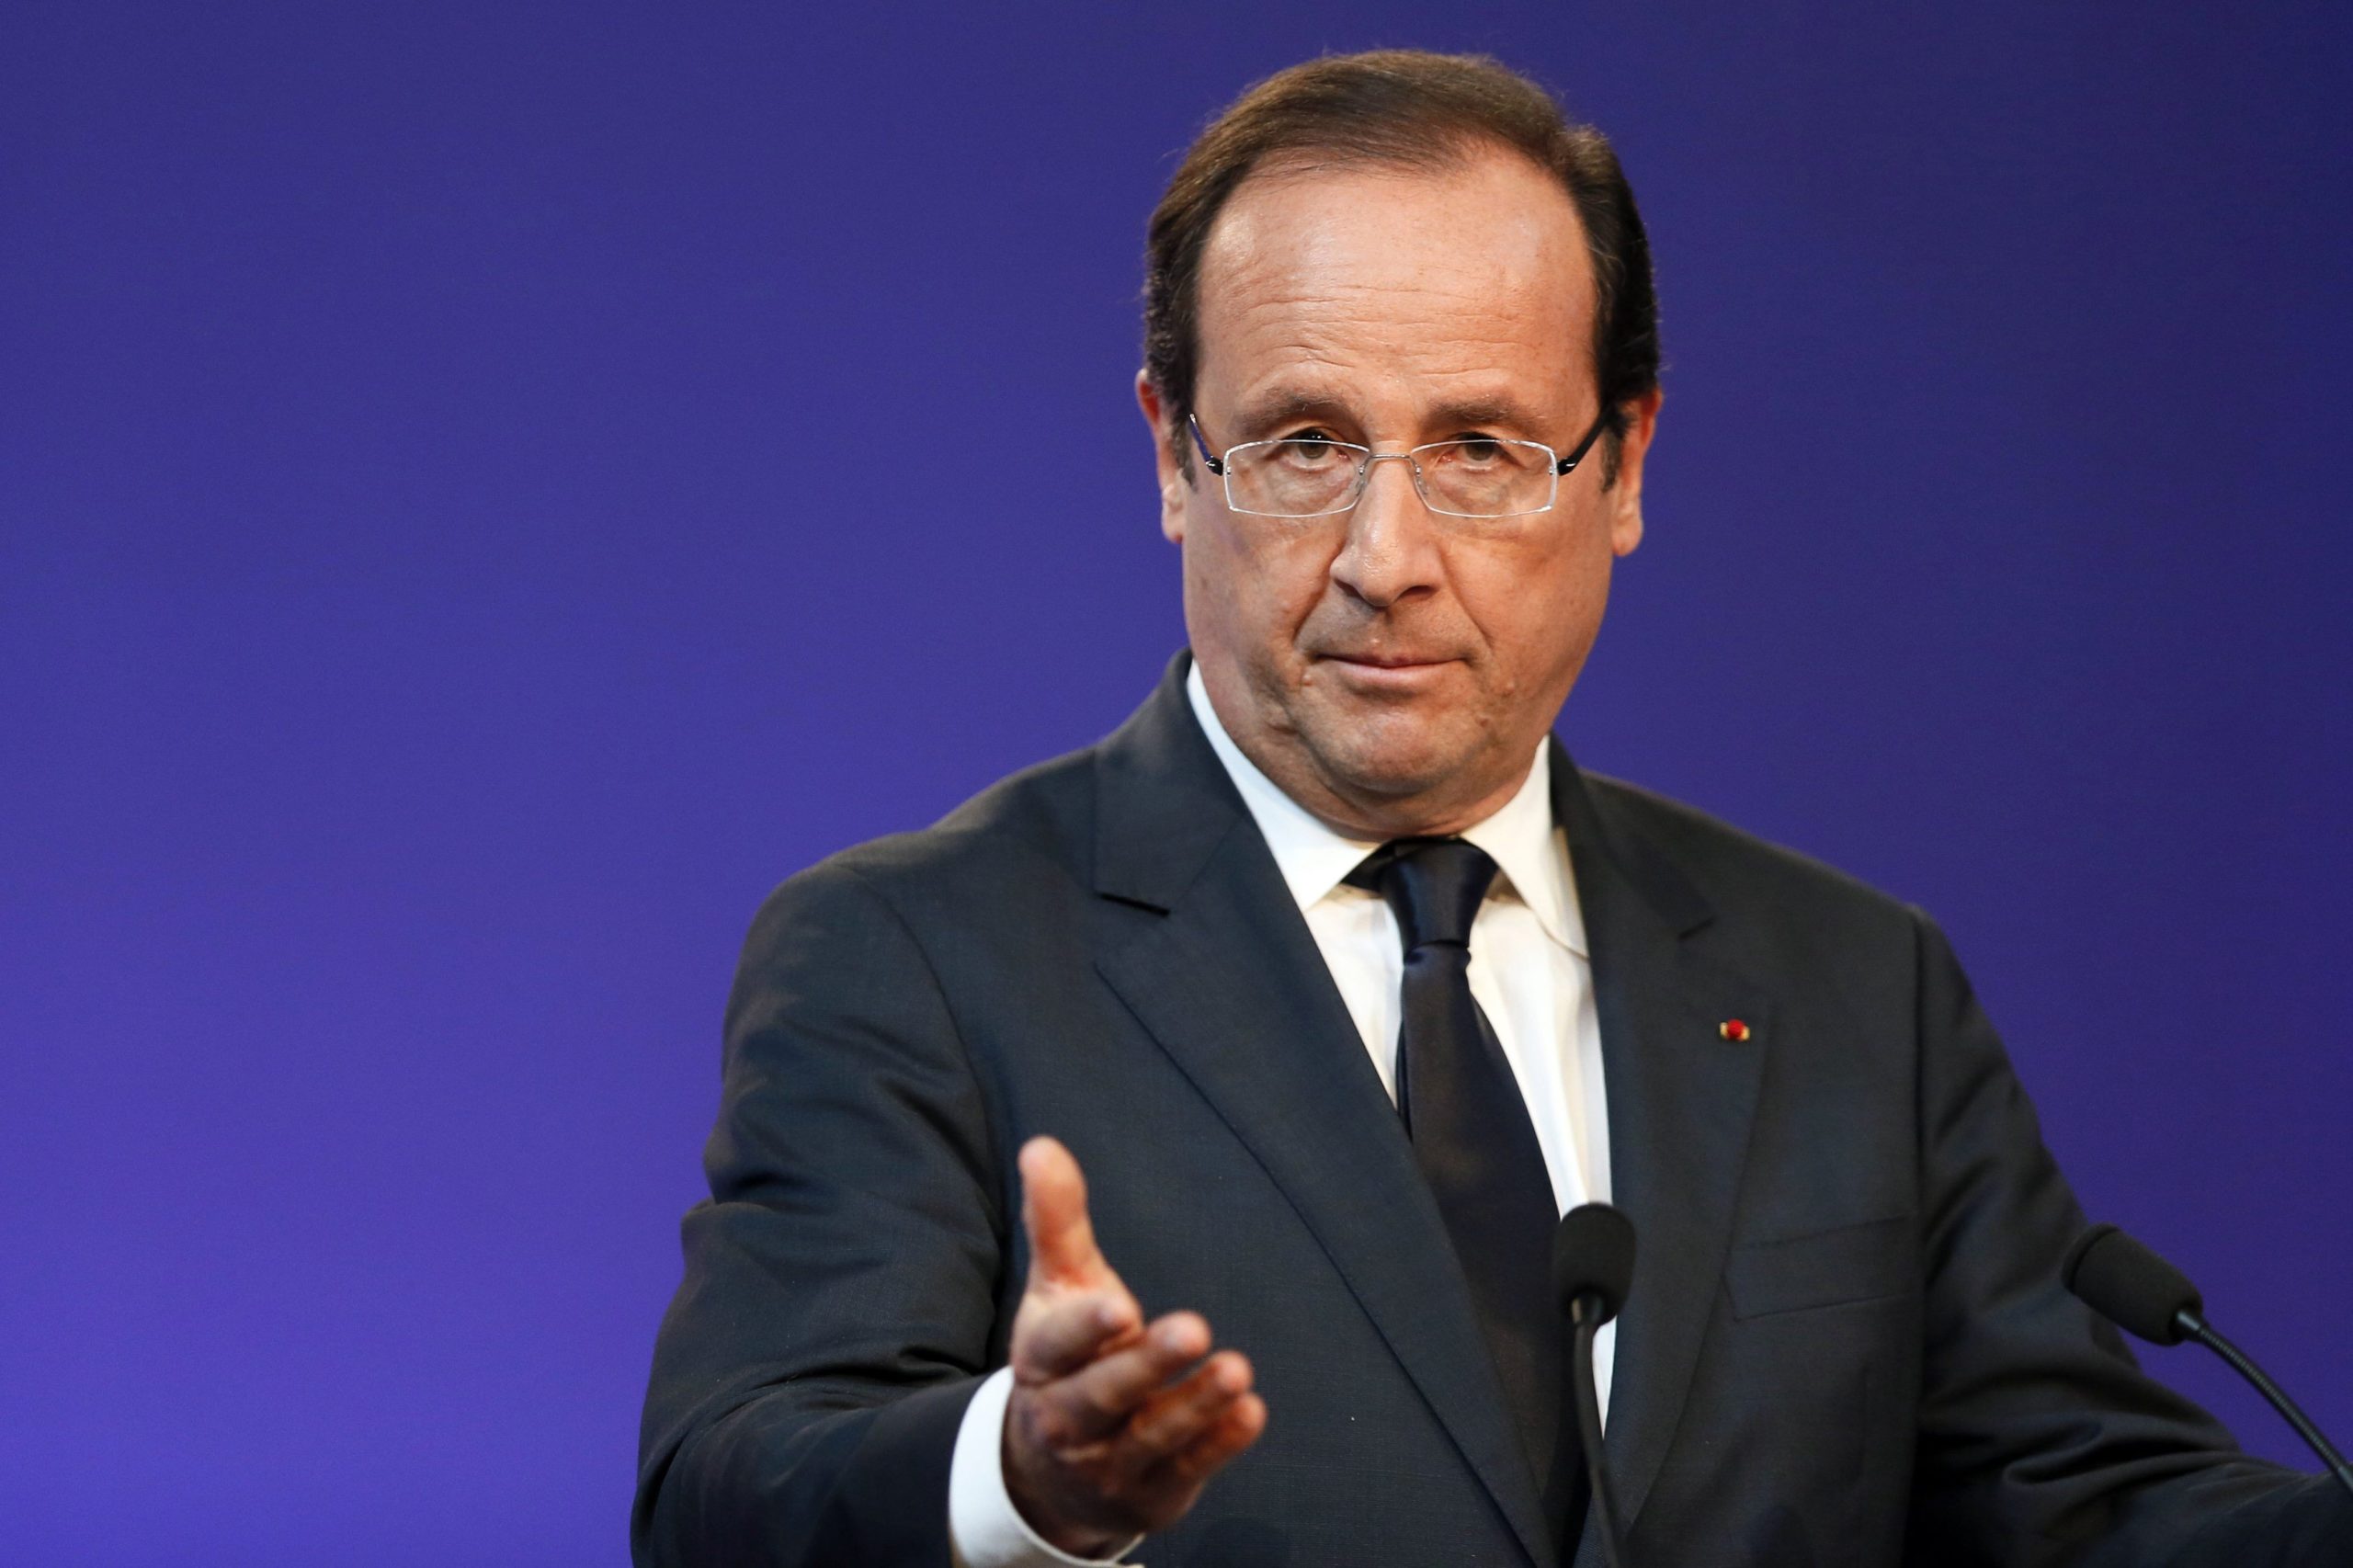 Το 62% των Γάλλων επιθυμεί την παραίτηση του Ολάντ